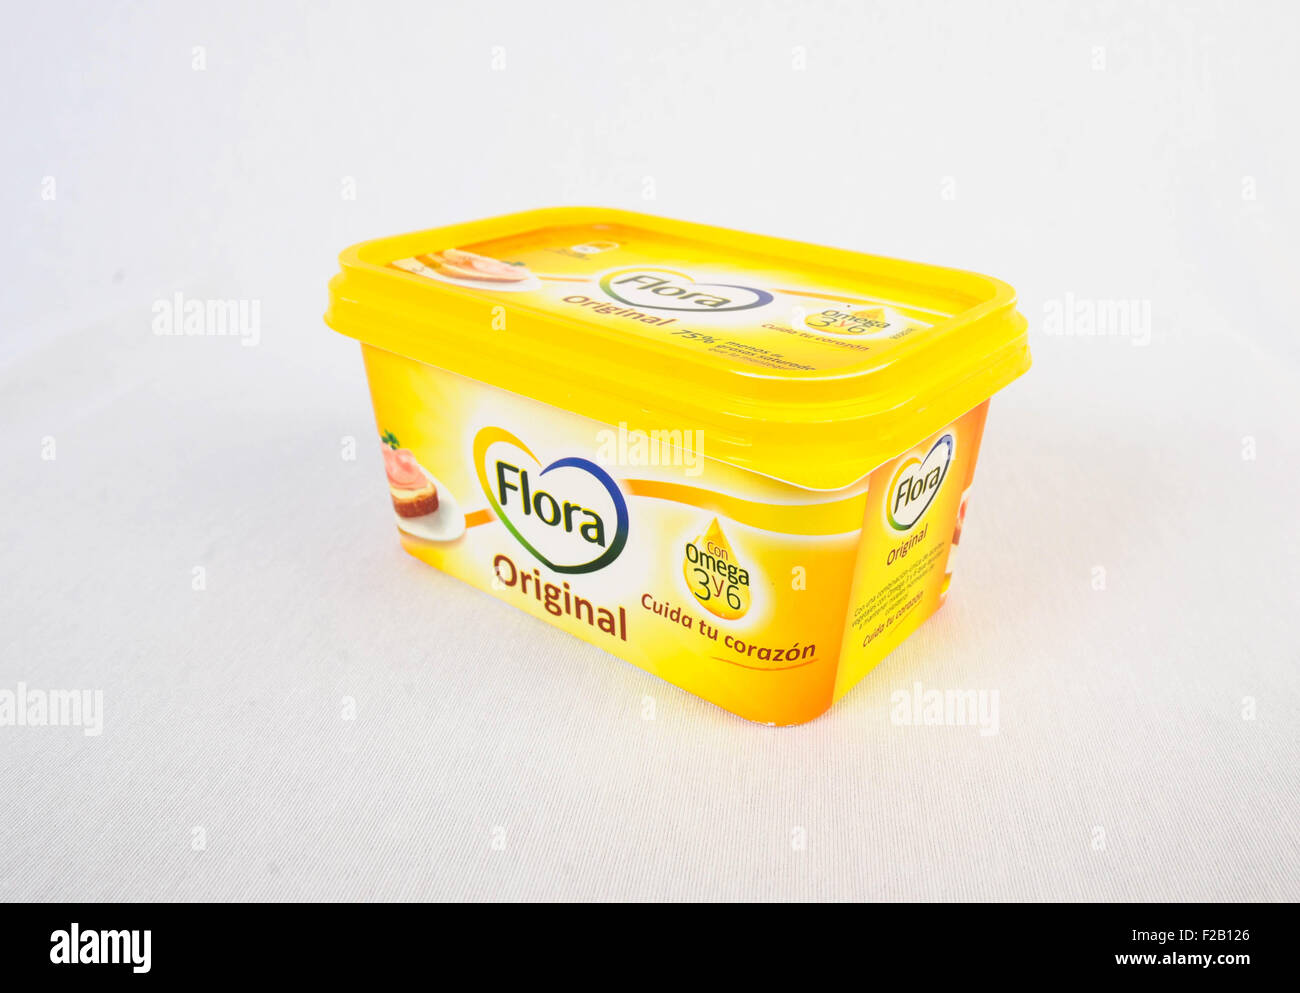 Butter Flora-Mantequilla Flora Stock Photo